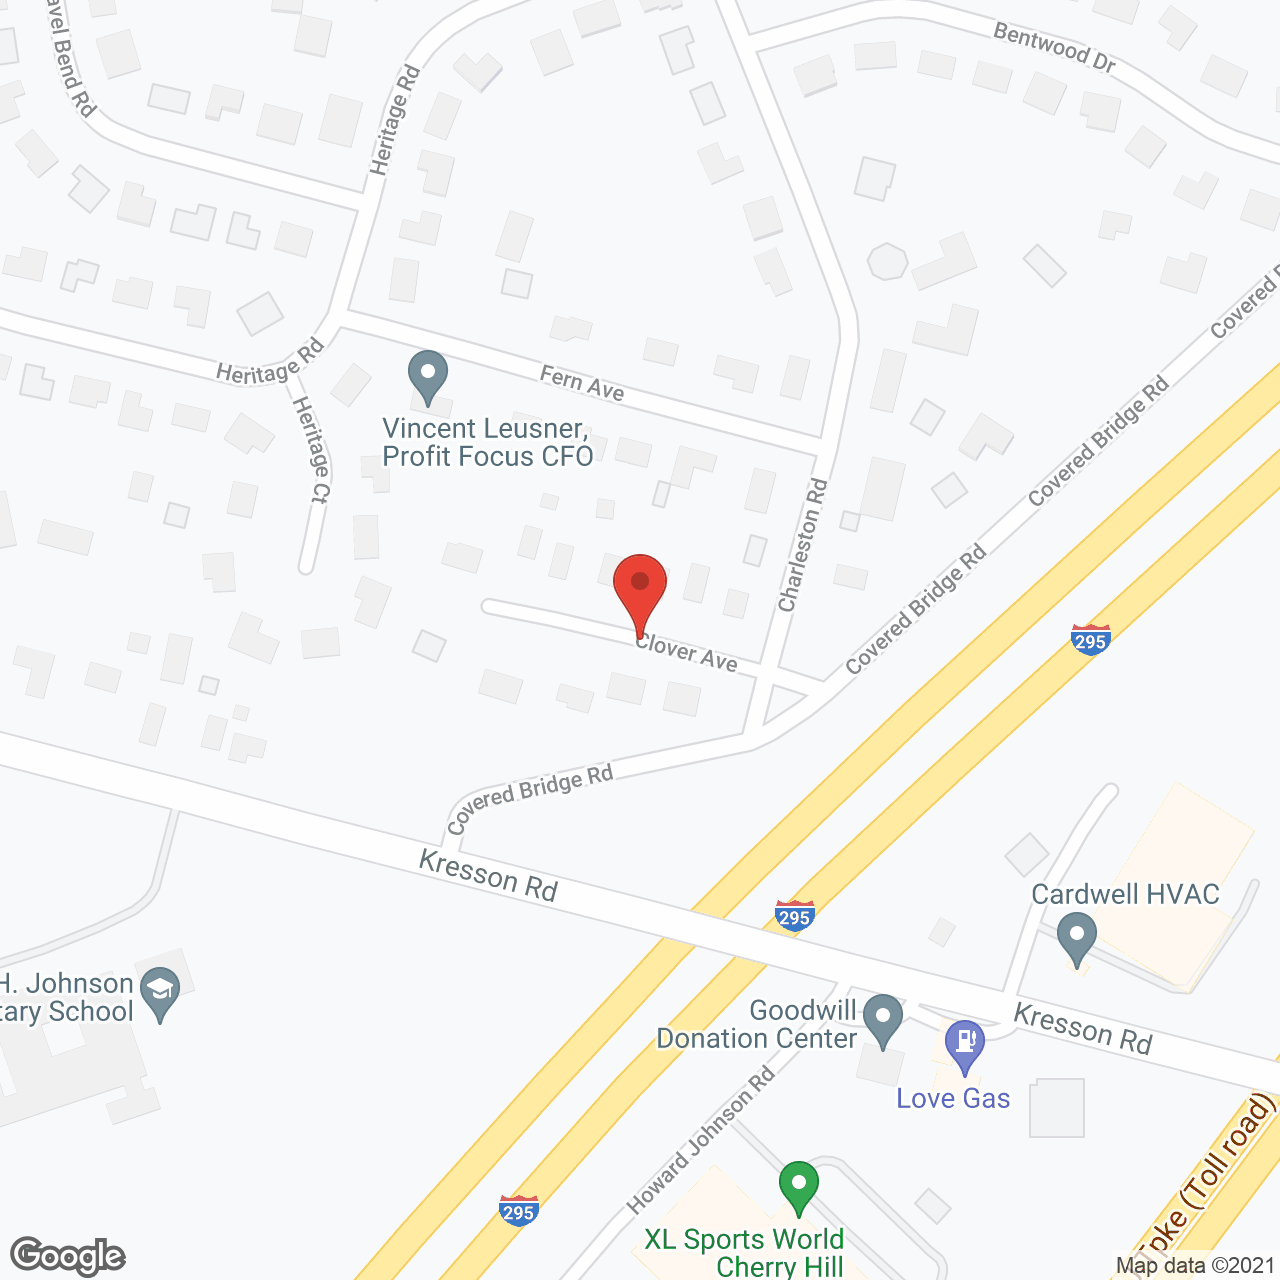 Vista Ridge of Magnolia in google map